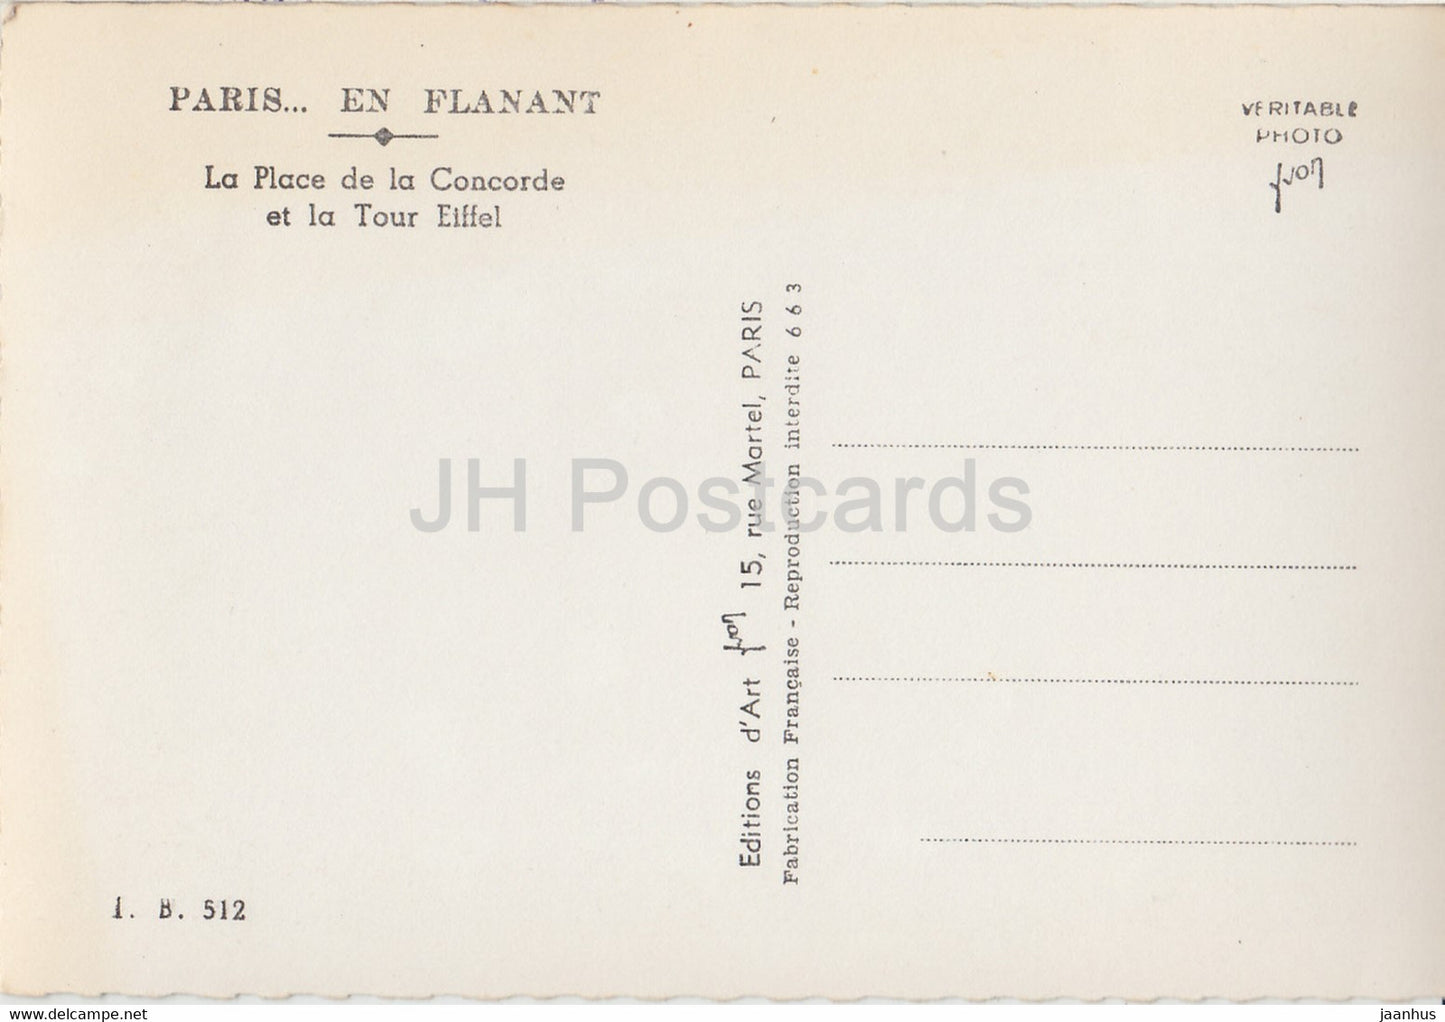 Paris en Flanant - La Place de la Concorde et la Tour Eiffel - Autos - alte Postkarte - Frankreich - unbenutzt